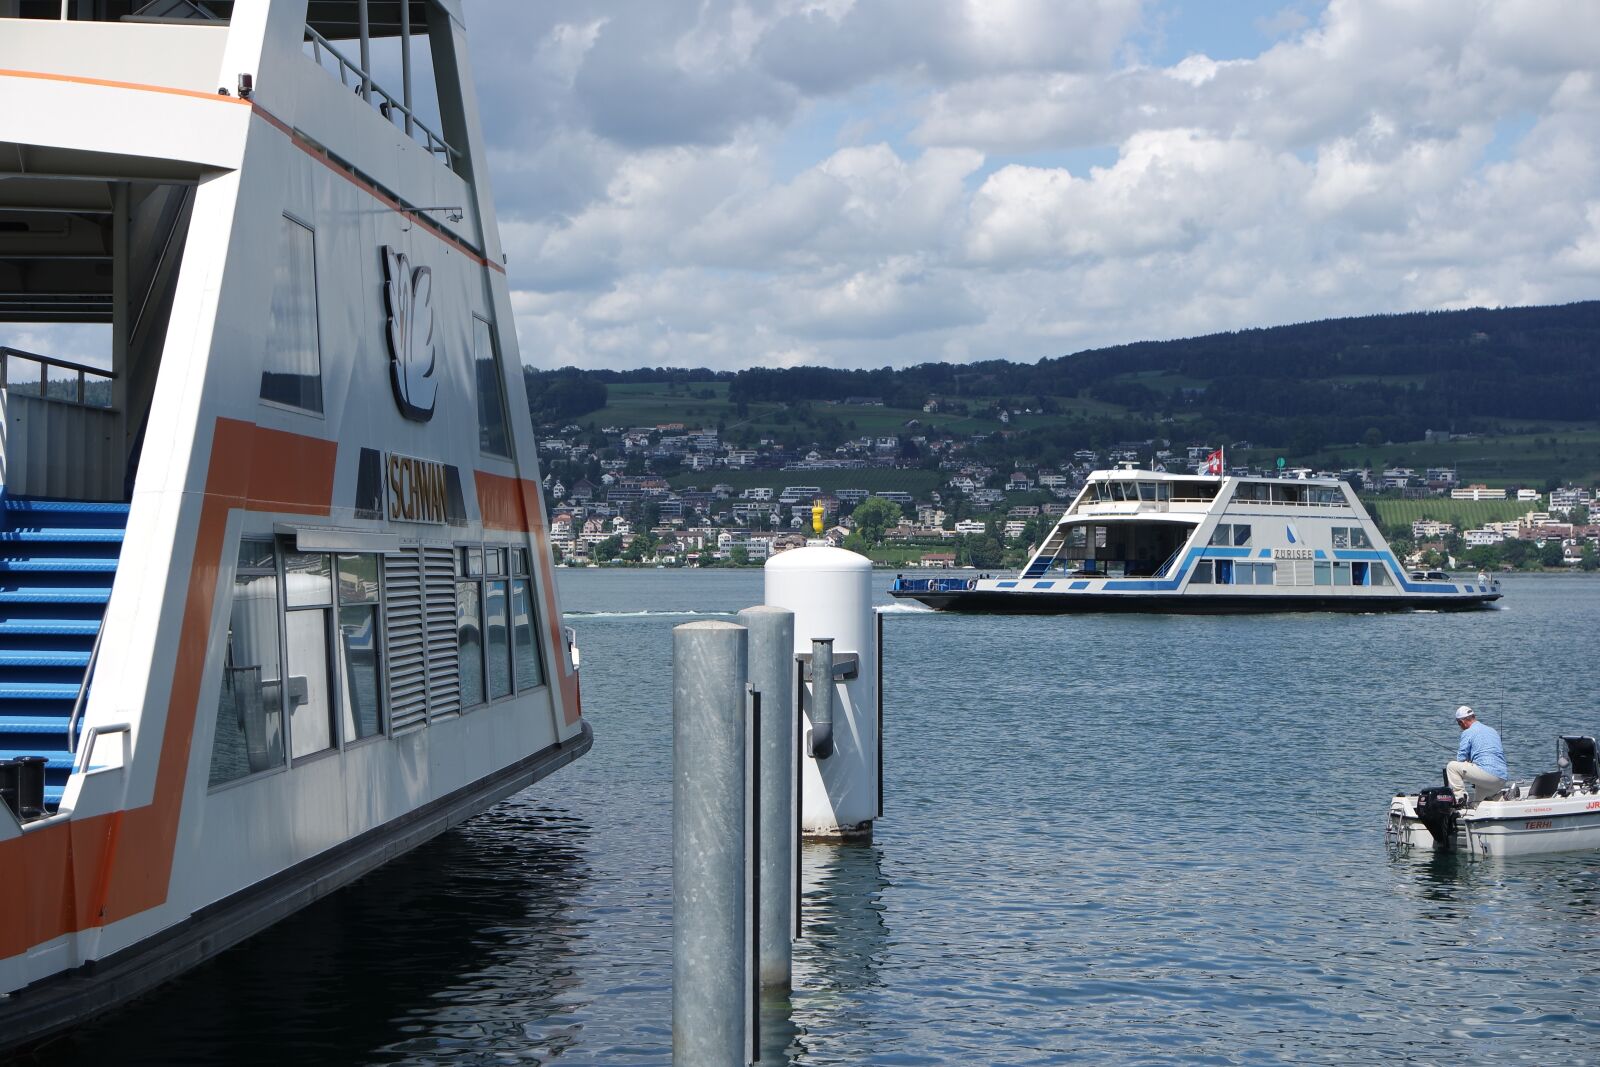 Samsung NX3000 sample photo. Zurich, lake zurich, horgen photography